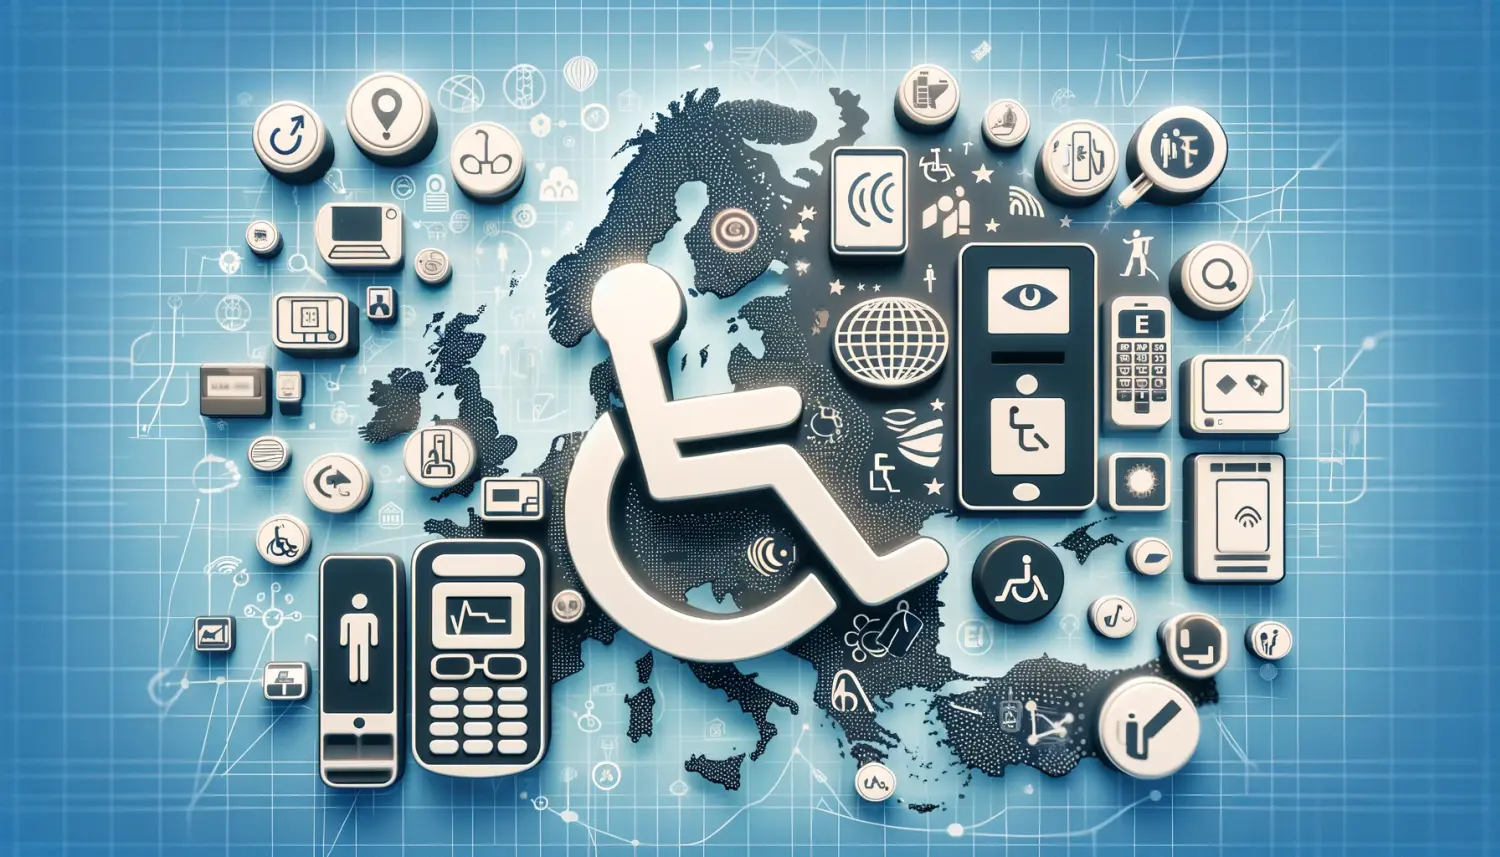 Obraz wyróżniający, reprezentujący Europejski Akt o Dostępności, został wygenerowany. Zawiera on różnorodne symbole dostępności oraz przedstawia technologie dostępne dla osób z różnymi potrzebami, zintegrowane z mapą Europy.